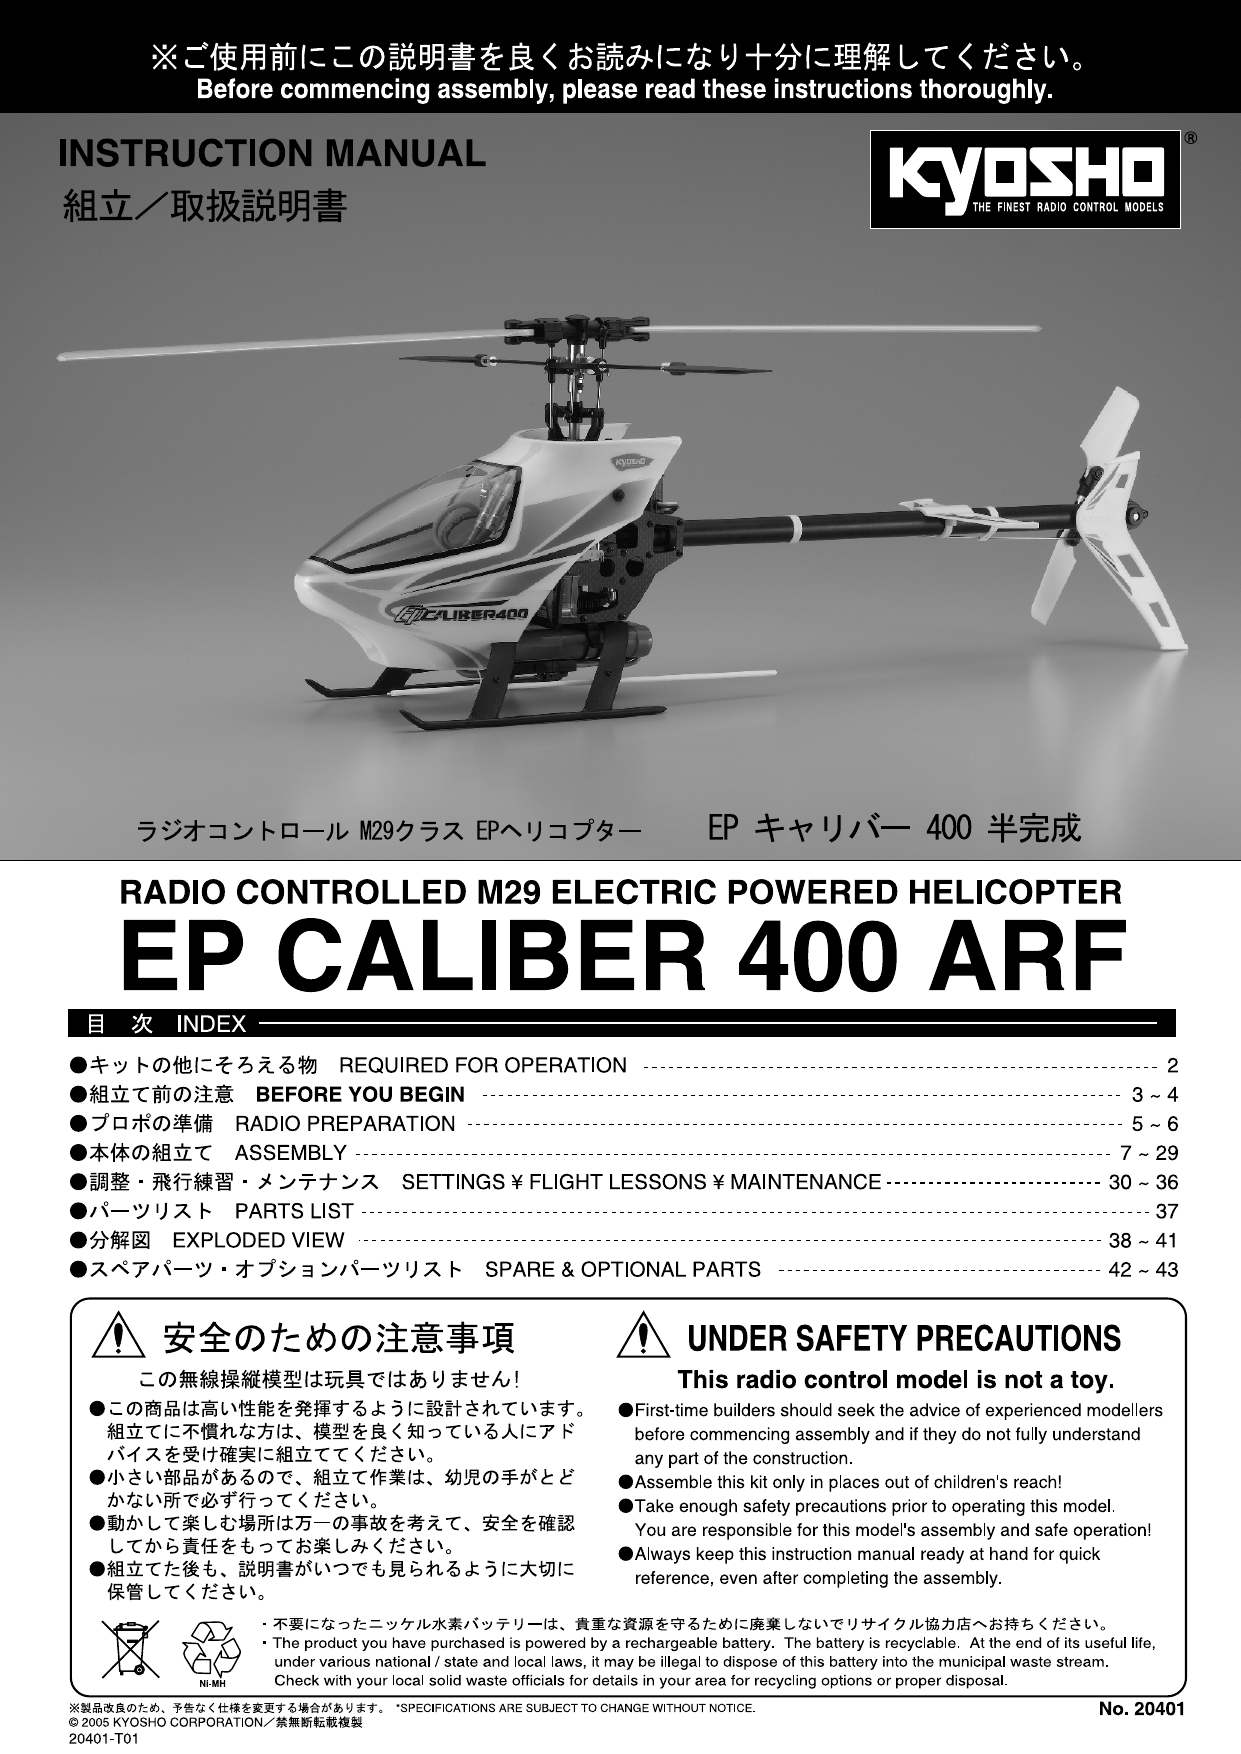 Kyosho EP CALIBER 400 manual | Manualzz